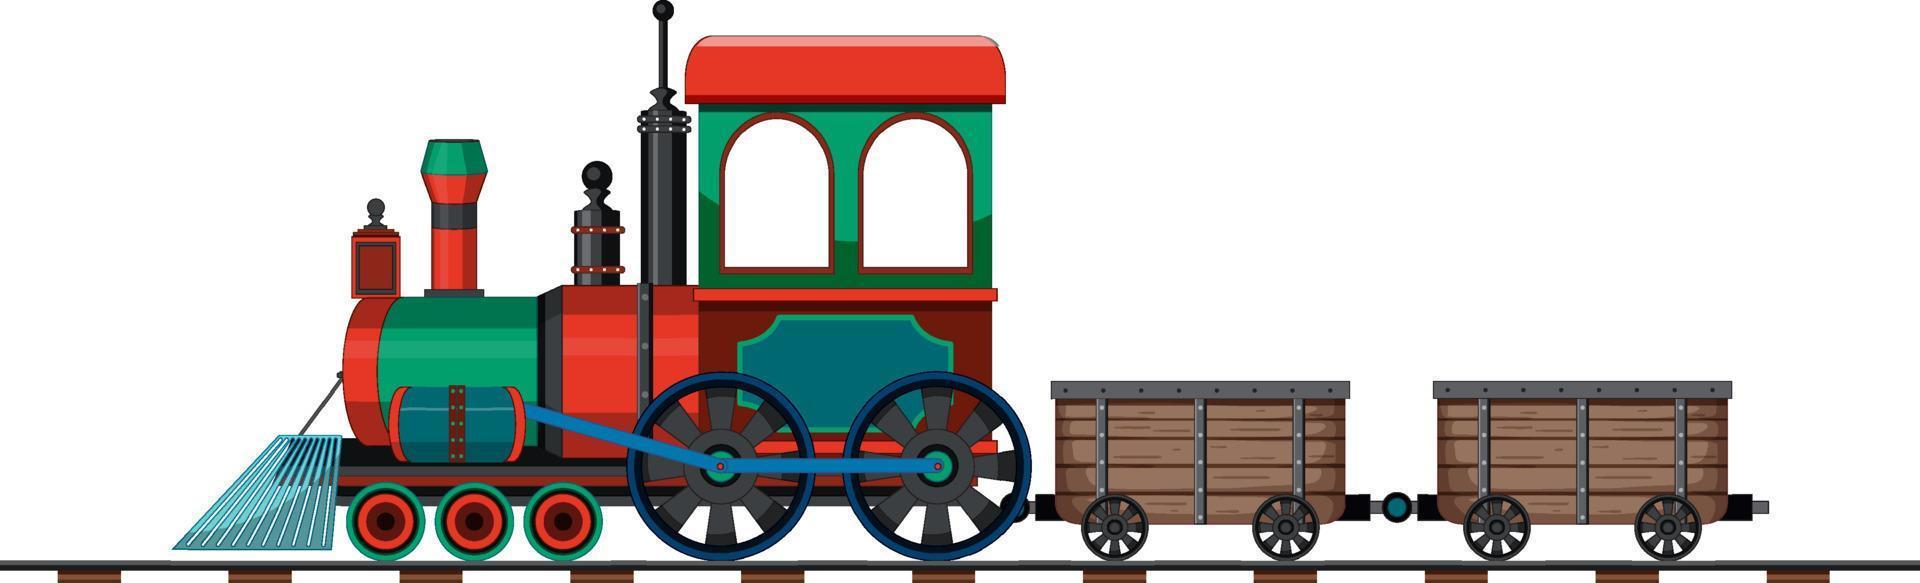 locomotive à vapeur train style vintage vecteur